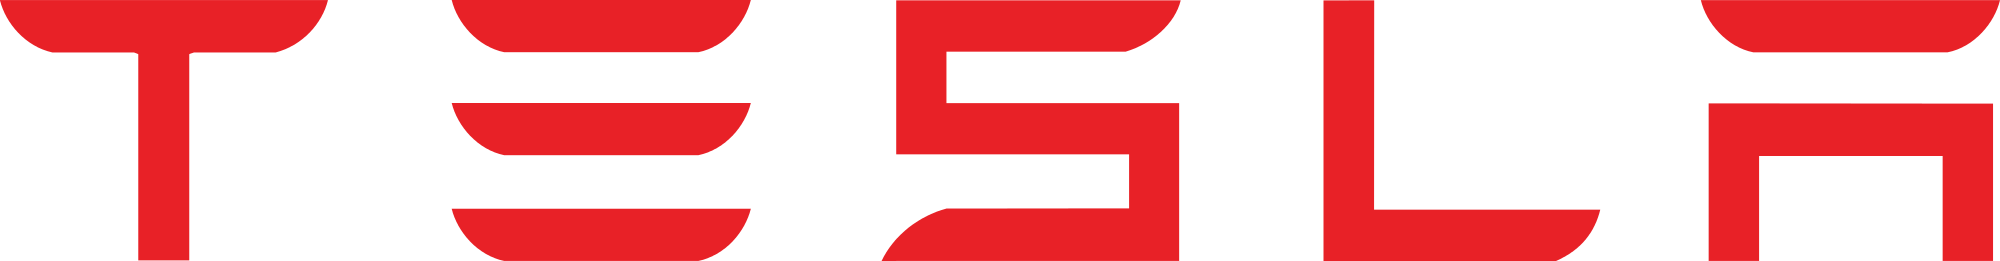 Tesla logo - Zoom customer